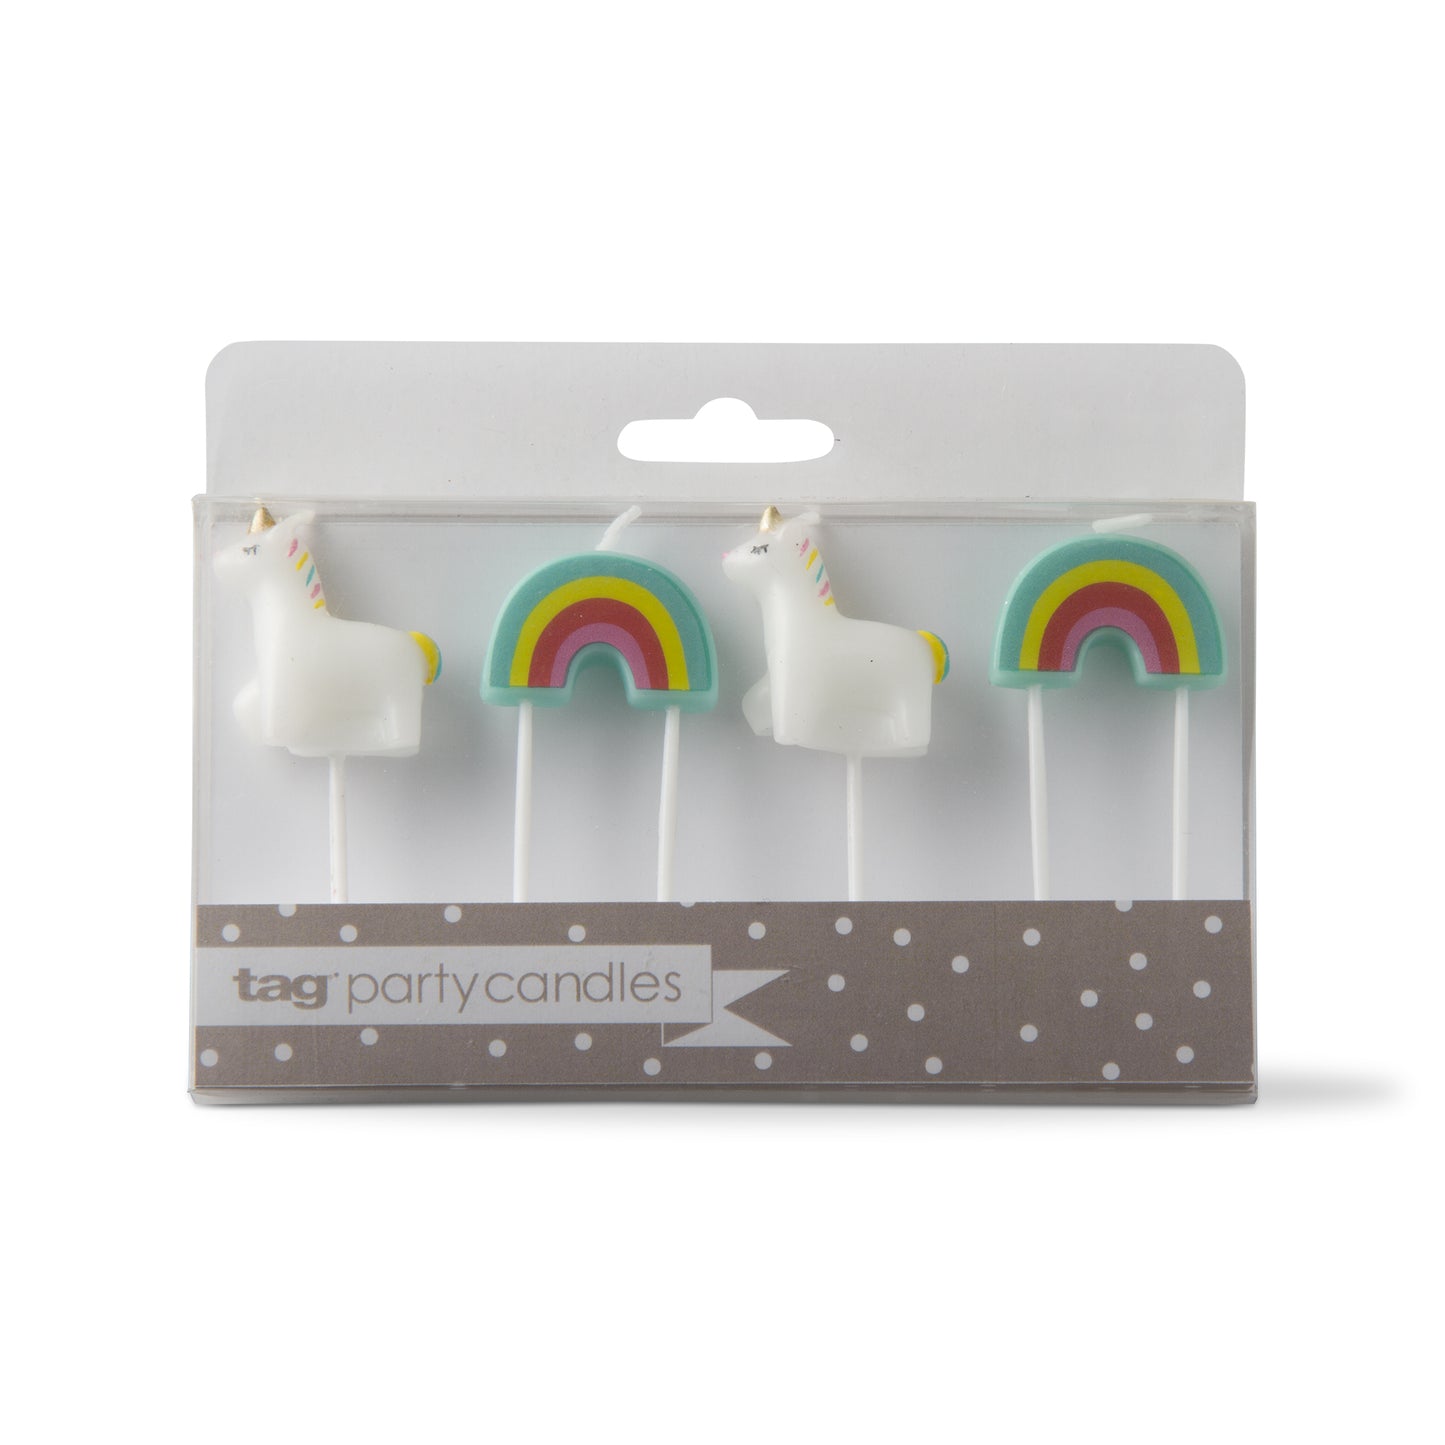 Unicorn & Rainbow Candles Set of 4